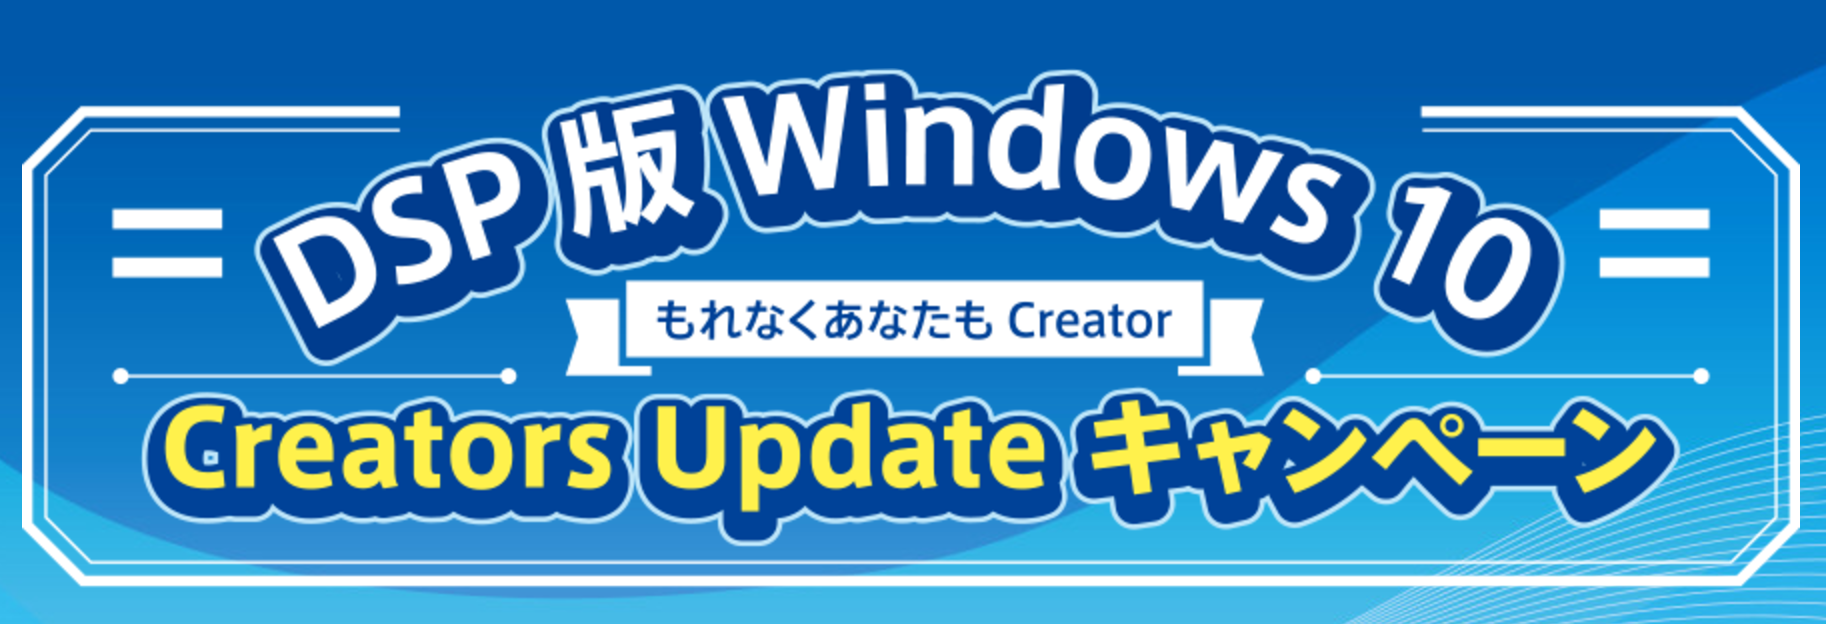 日本MS、DSP版の｢Windows 10｣を購入すると様々な特典が貰えるキャンペーンを開始